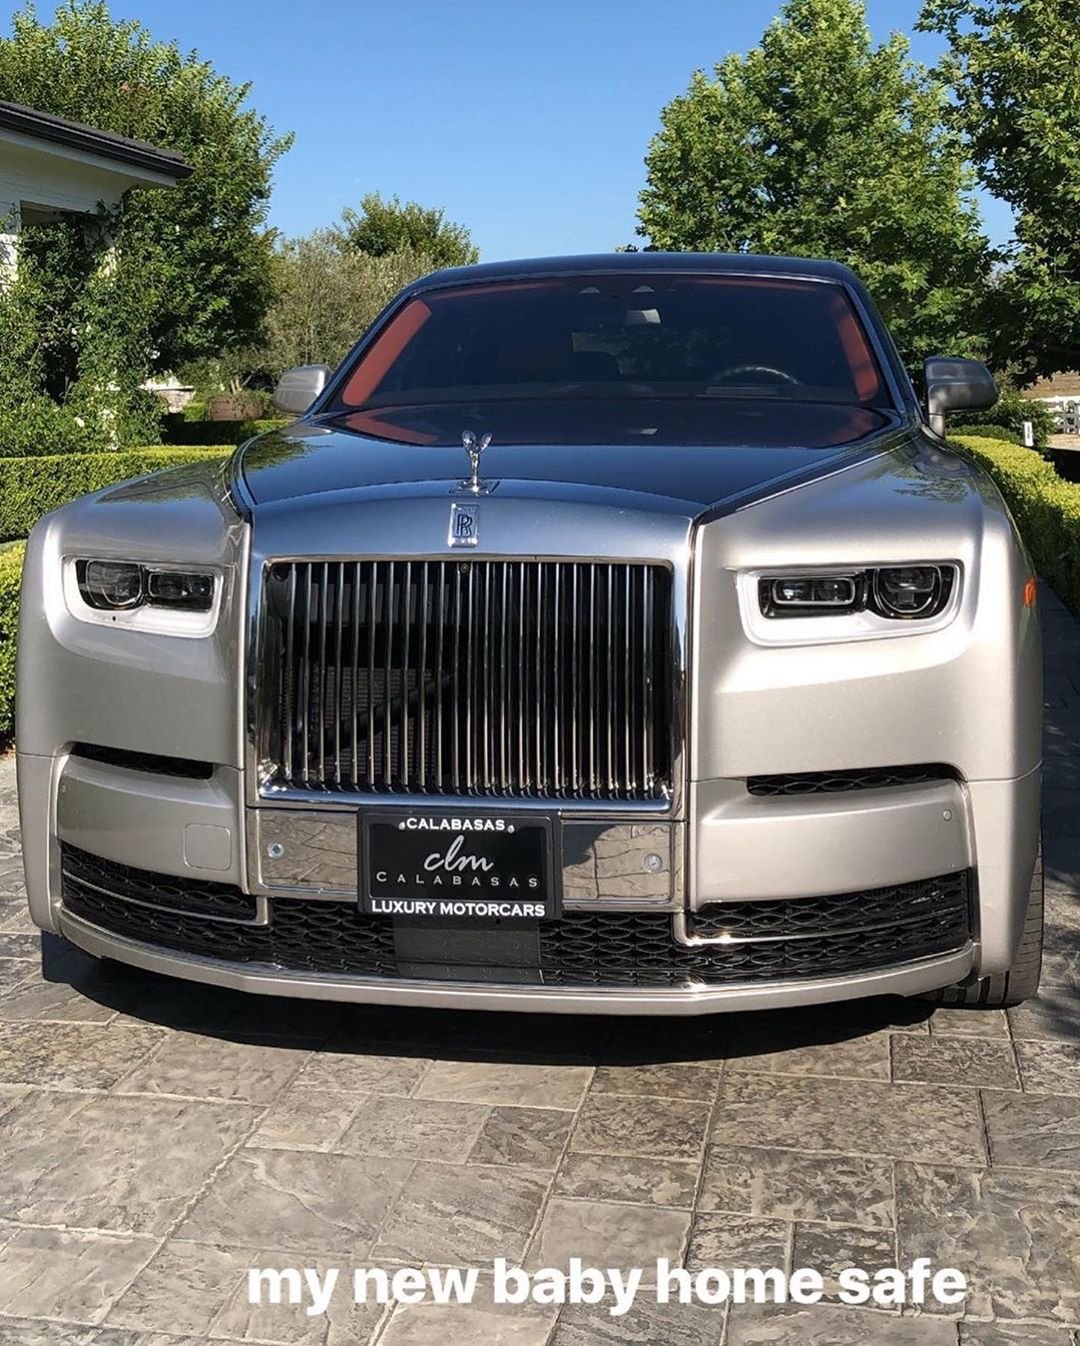 Кайли Дженнер показала свое роскошное авто за 450 тысяч долларов - фото 440484